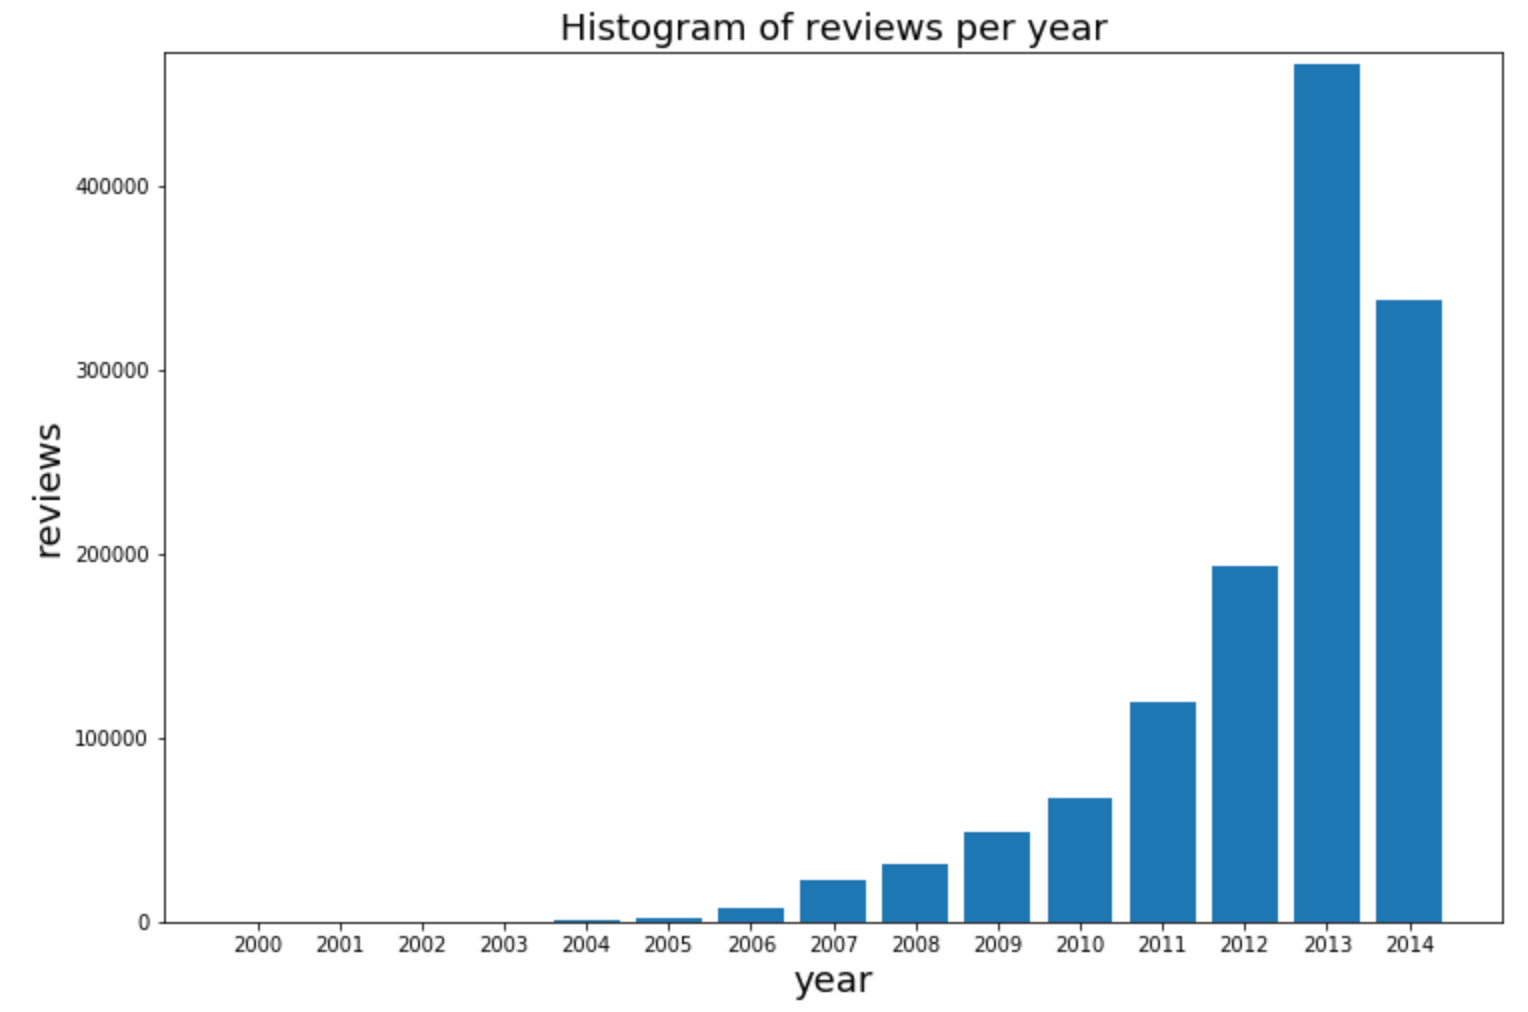 Reviews per year in dataset